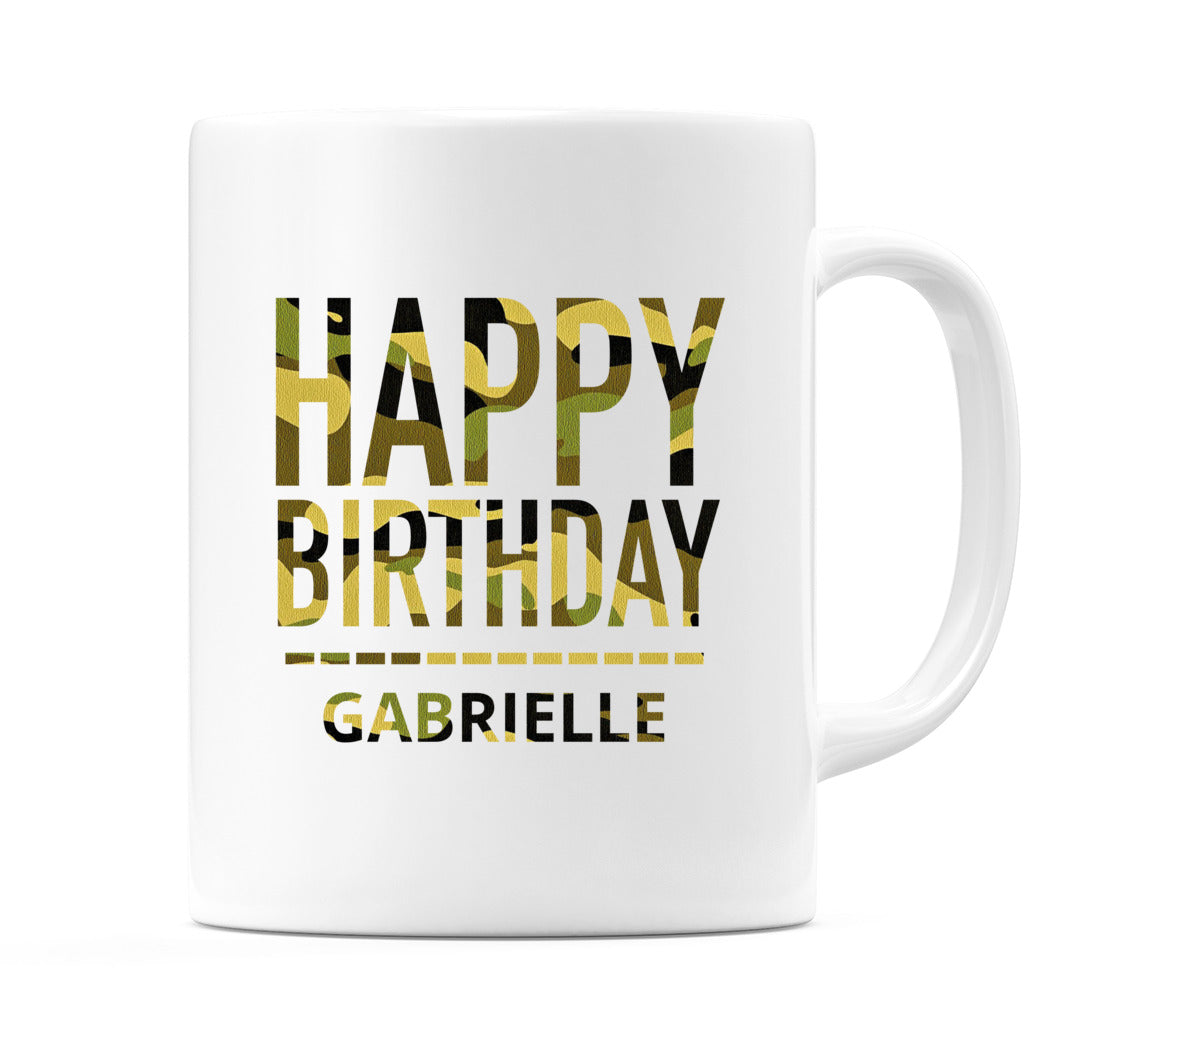 Happy Birthday Gabrielle (Camo) Mug Cup by WeDoMugs